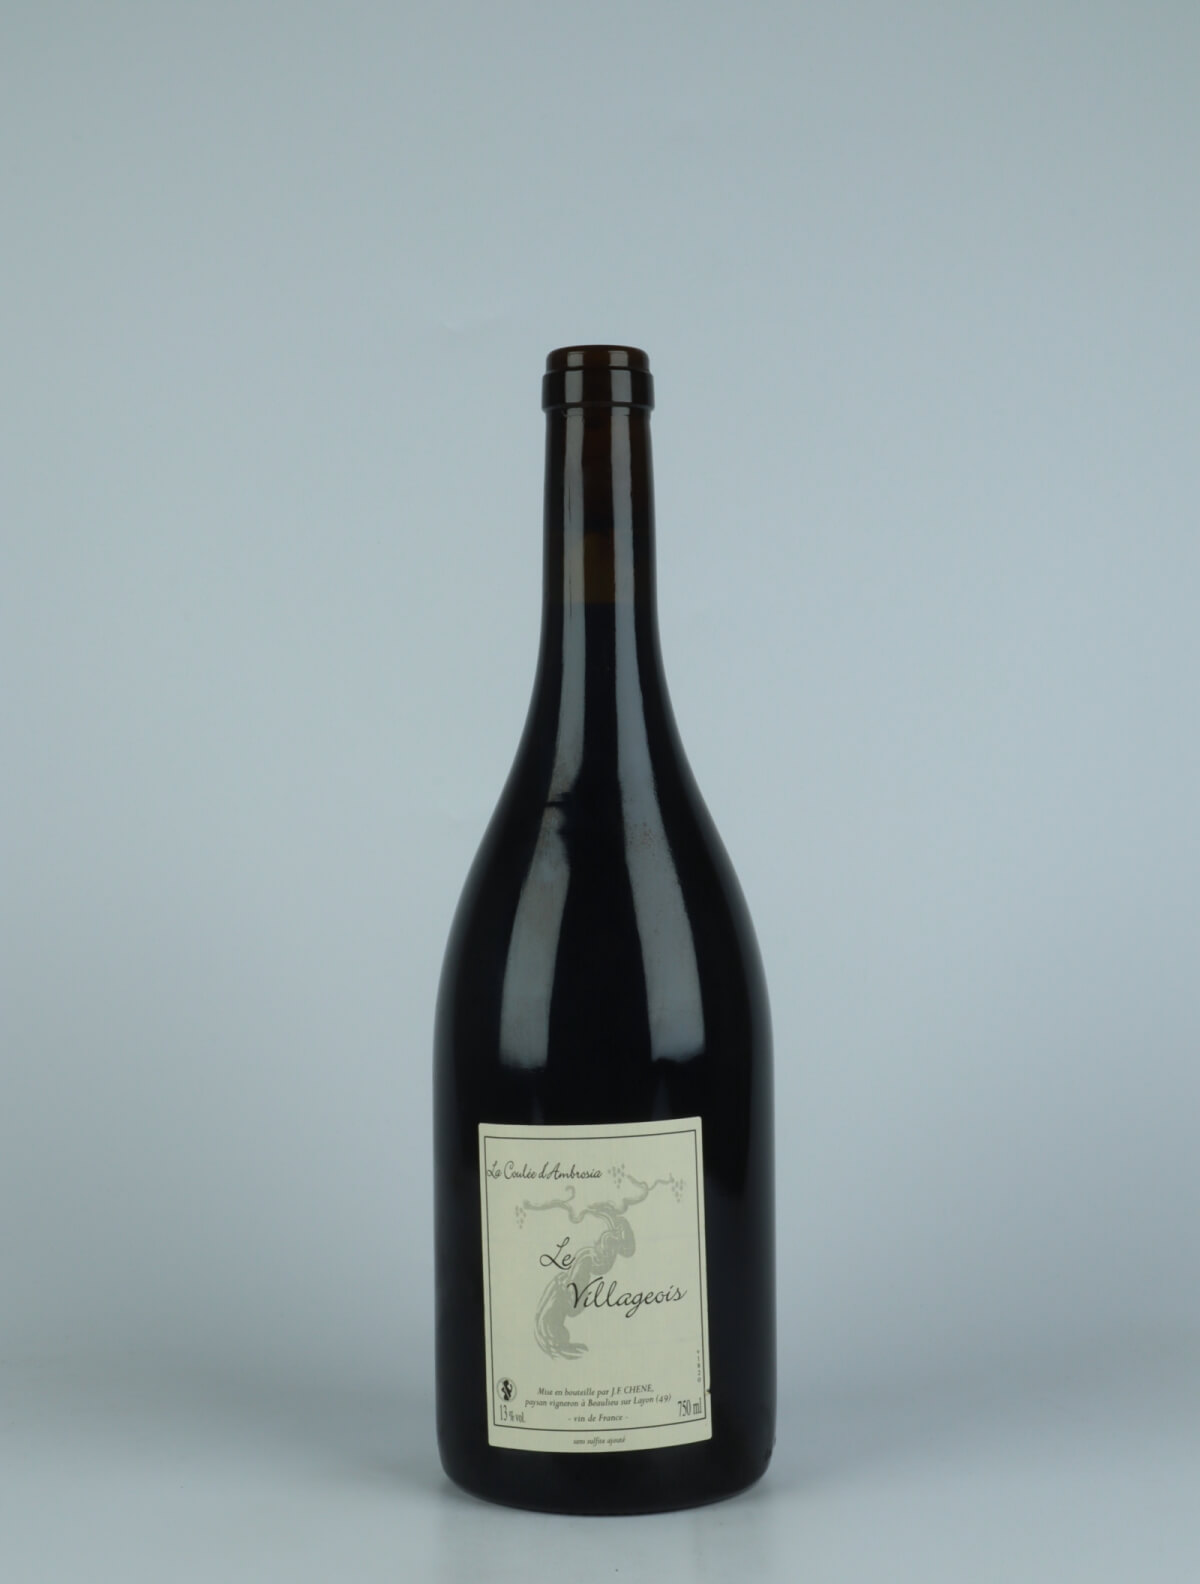 En flaske 2018 Le Villageois Rødvin fra Jean-Francois Chene, Loire i Frankrig